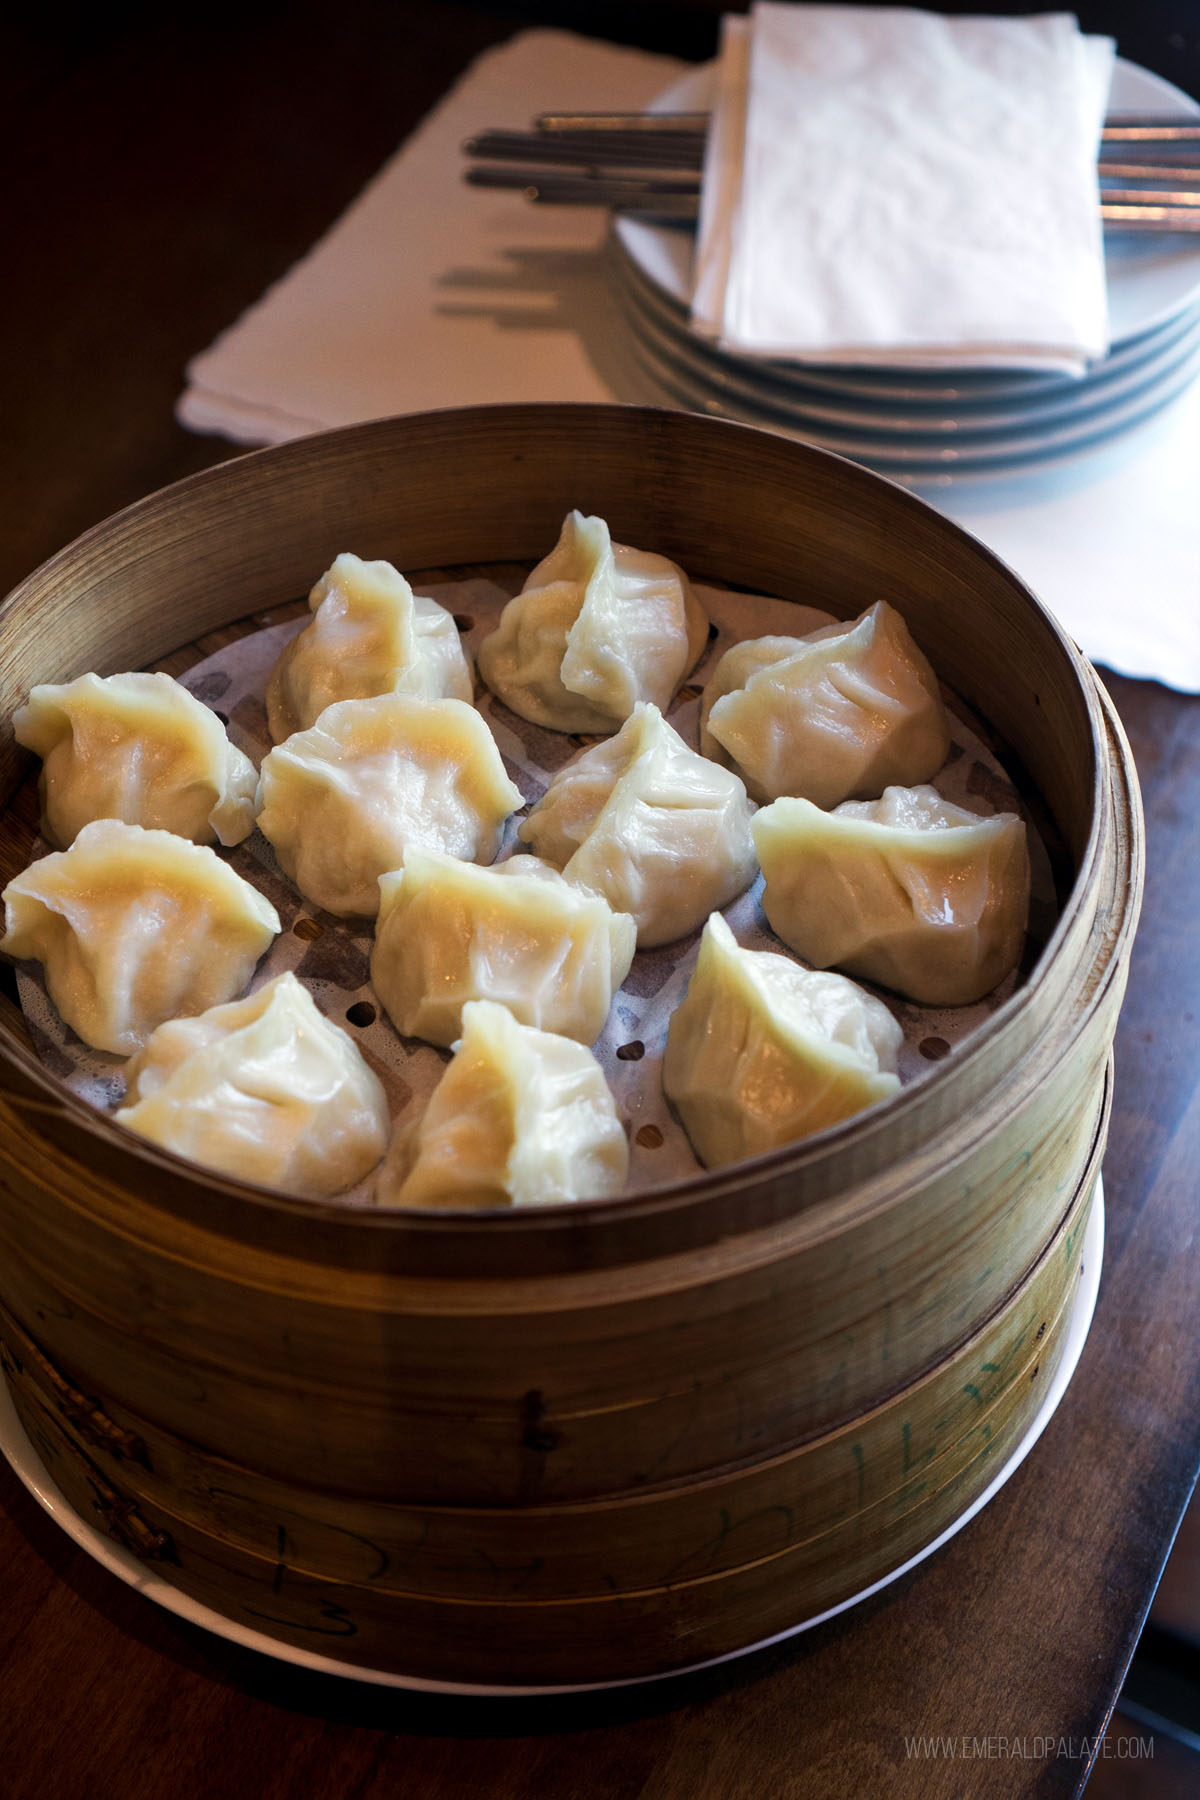 dumplings in a bamboo steamer basket at one of the best restaurants in Edmonds WA